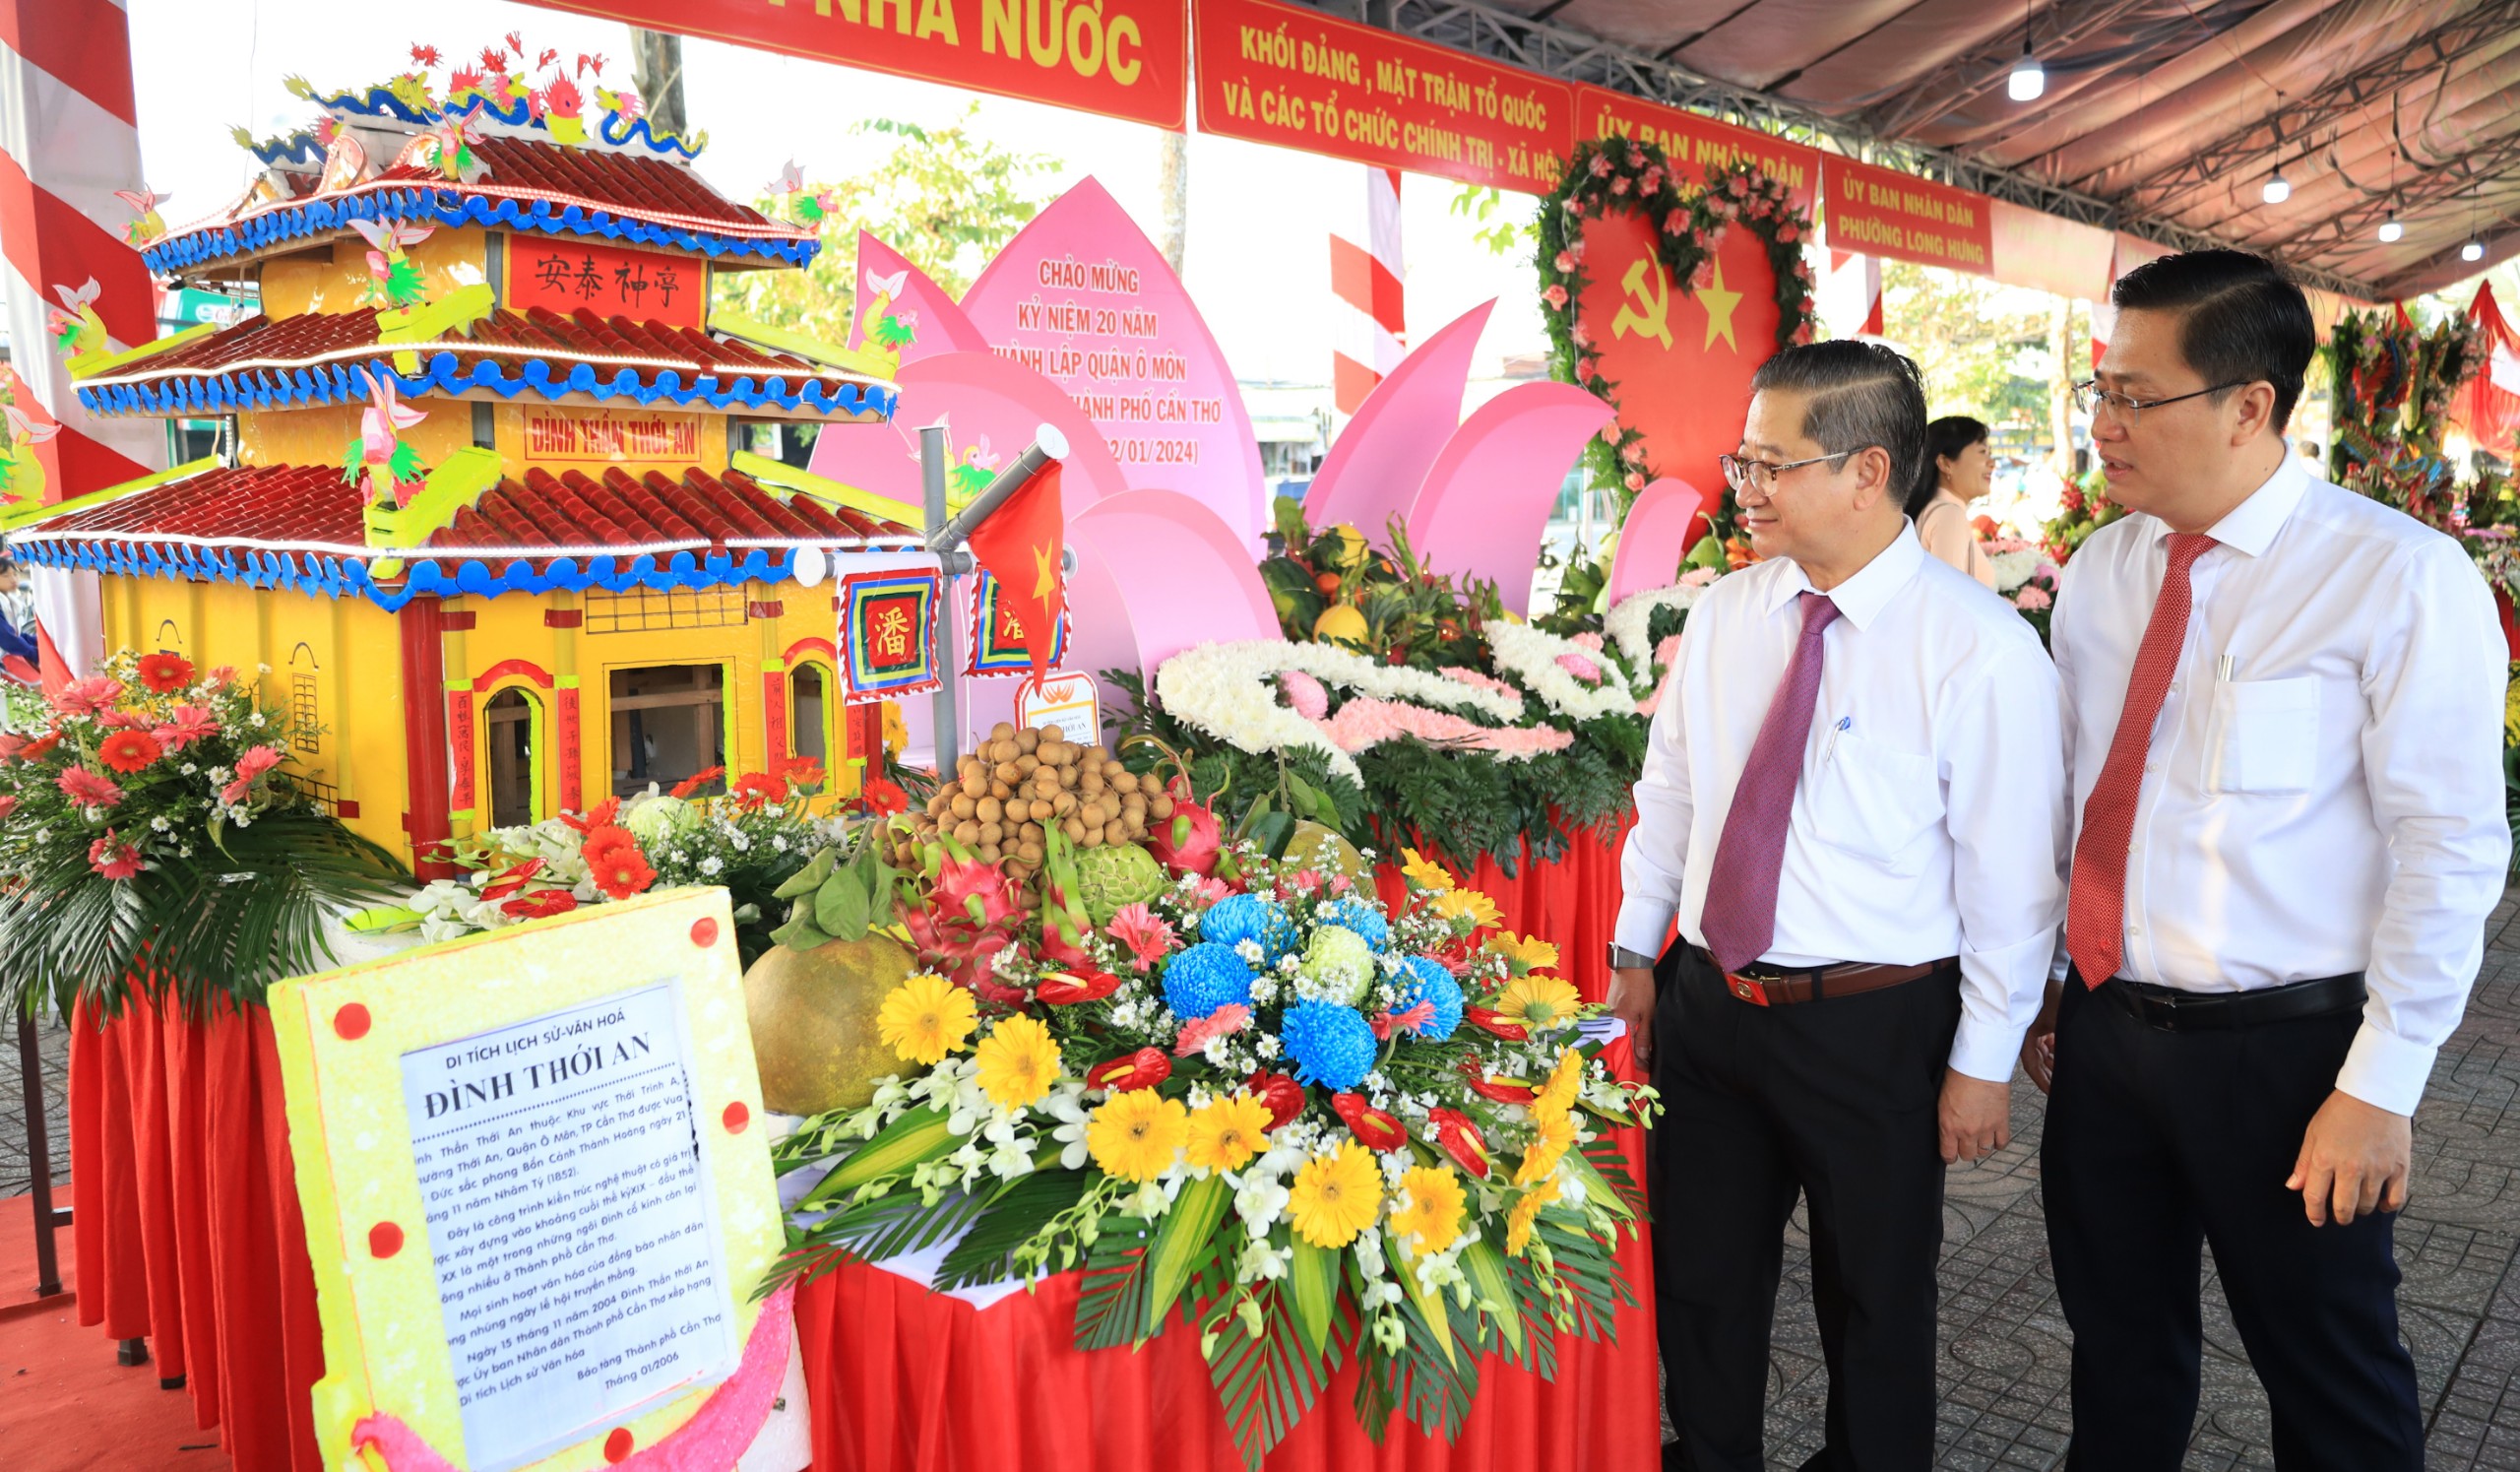 Ông Trần Việt Trường – Phó Bí thư Thành ủy, Chủ tịch UBND TP. Cần Thơ tham quan khu vực trưng bày trái cây và sản phẩm OCOP của địa phương.